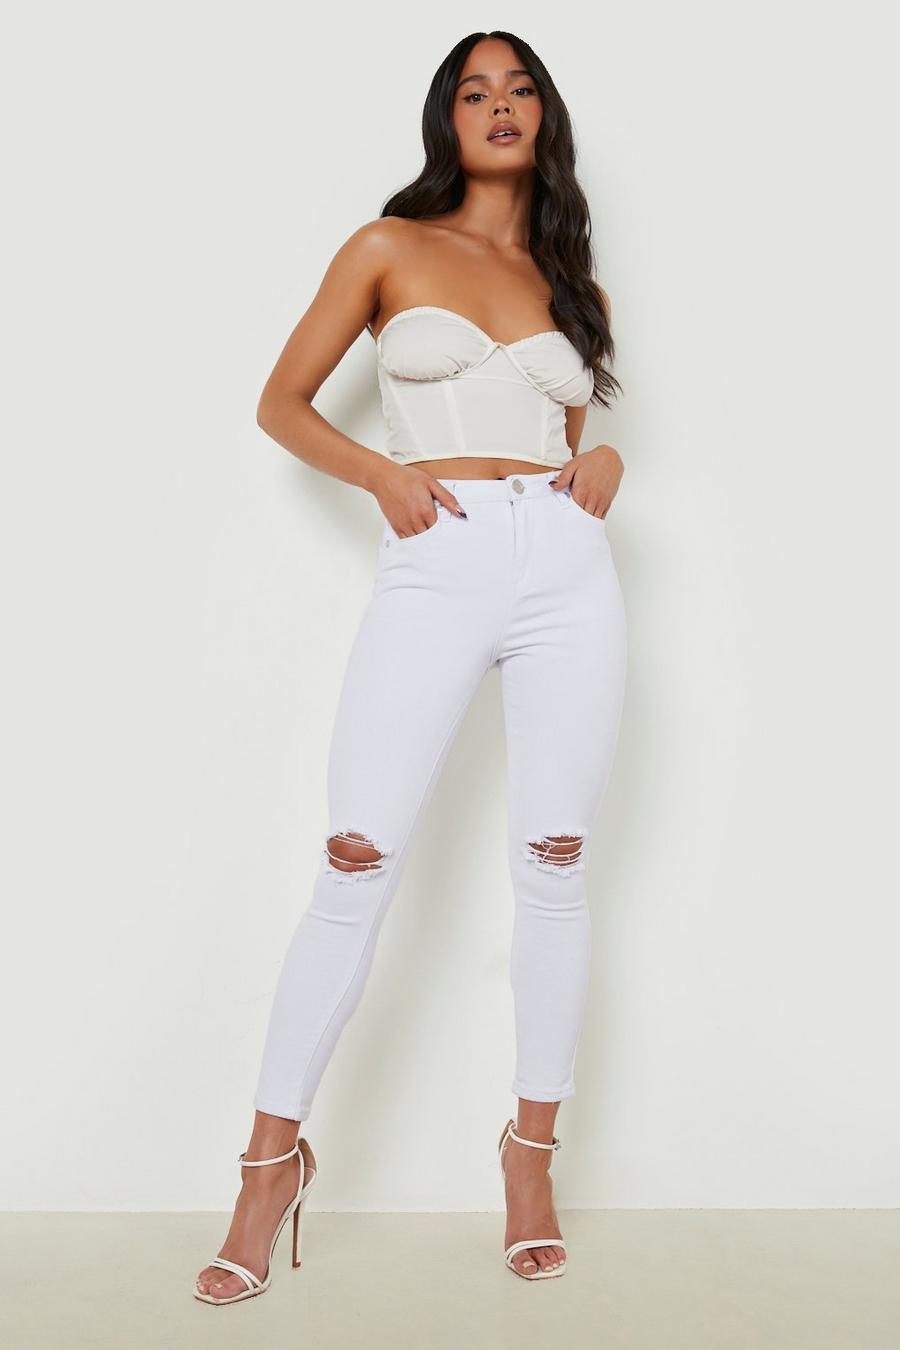 לבן blanco סקיני ג'ינס מבד ממוחזר עם קרעים, פטיט